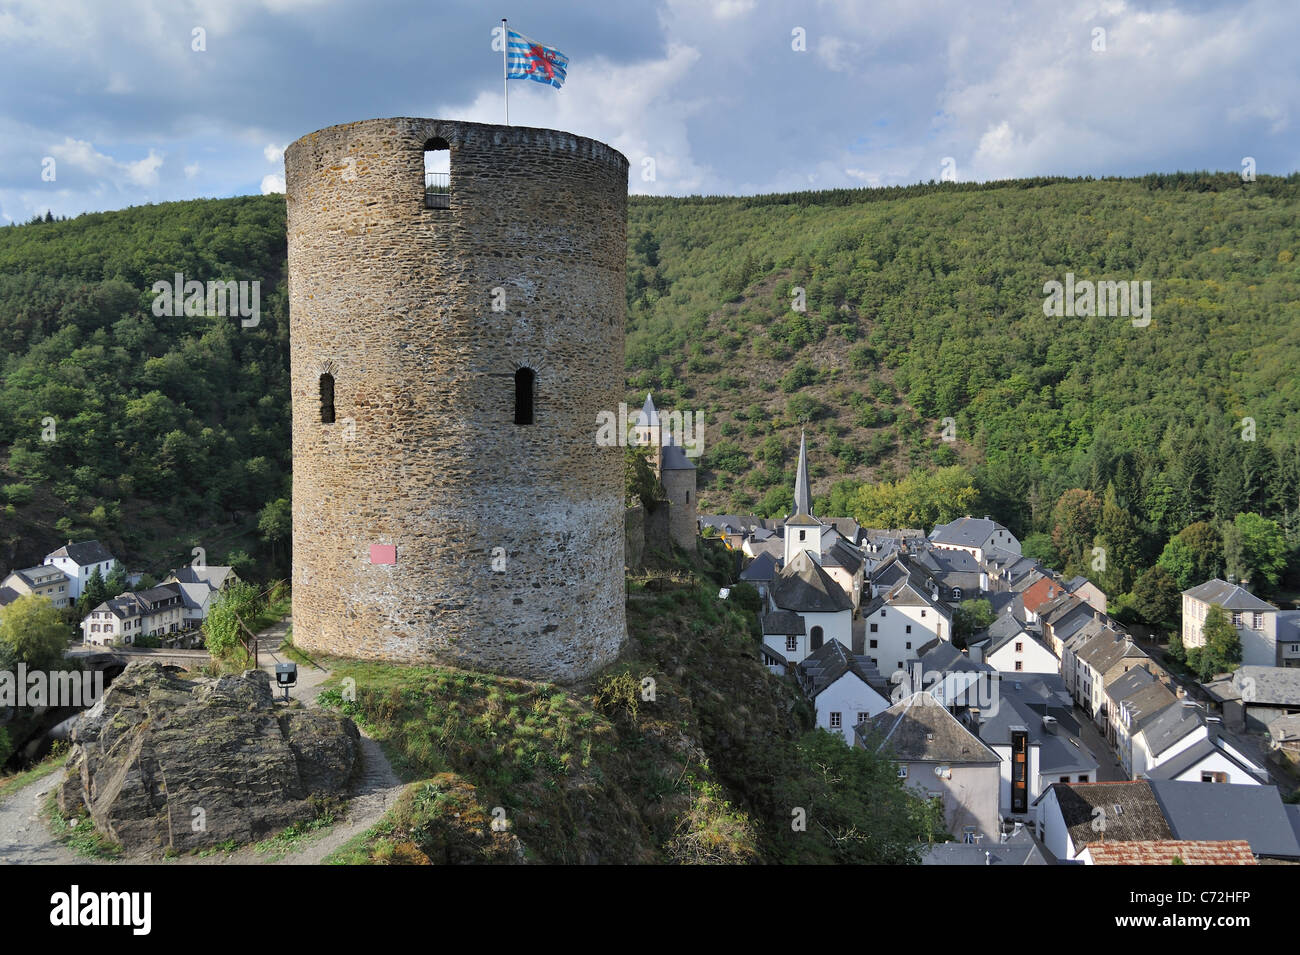 Ruine der mittelalterlichen Runde Wachturm / Lochturm im Dorf Esch-Sur-Sûre / Esch-Sauer, Luxemburg Stockfoto